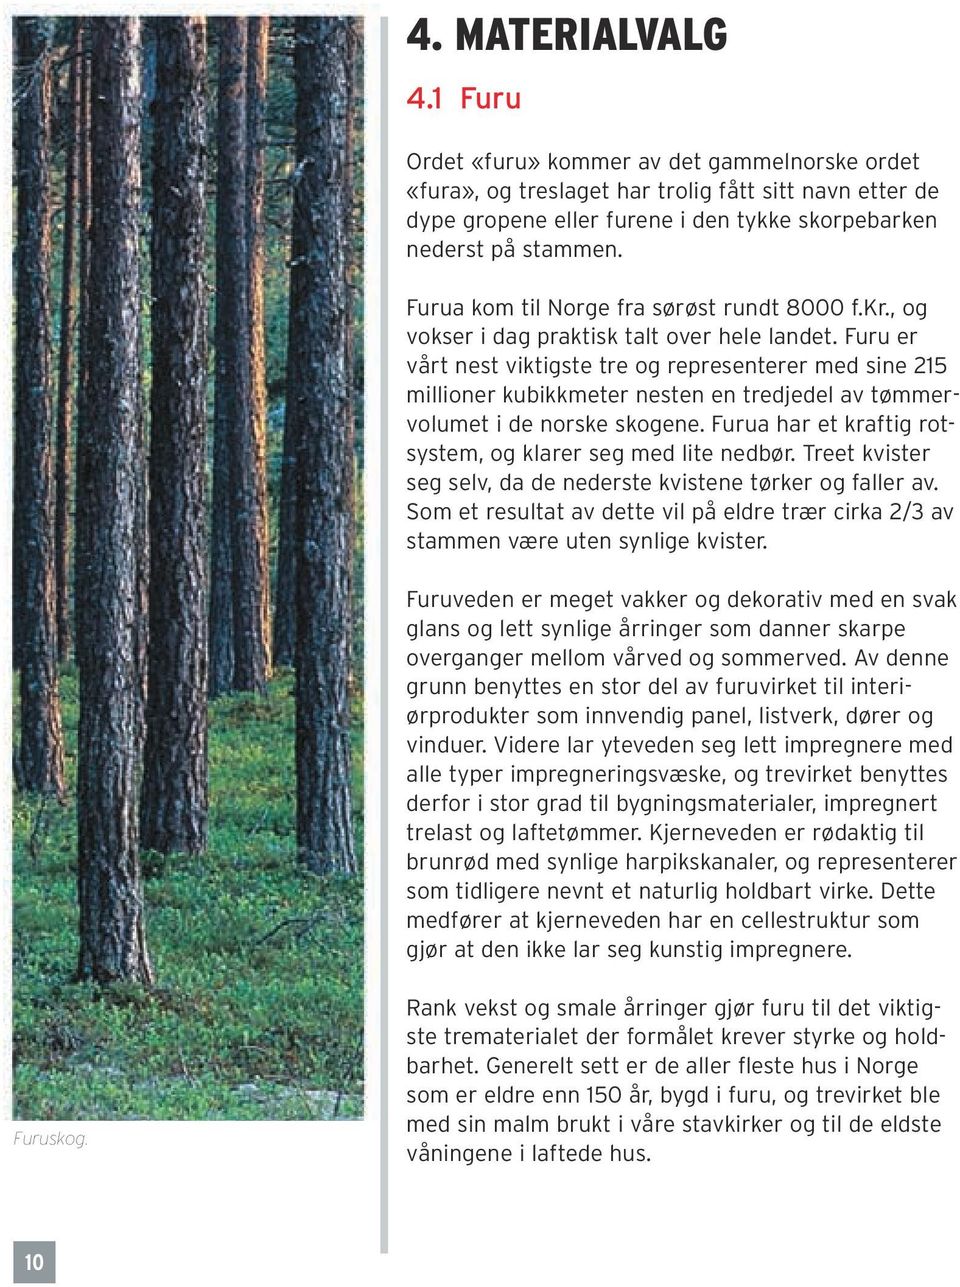 Furu er vårt nest viktigste tre og representerer med sine 215 millioner kubikkmeter nesten en tredjedel av tømmervolumet i de norske skogene.